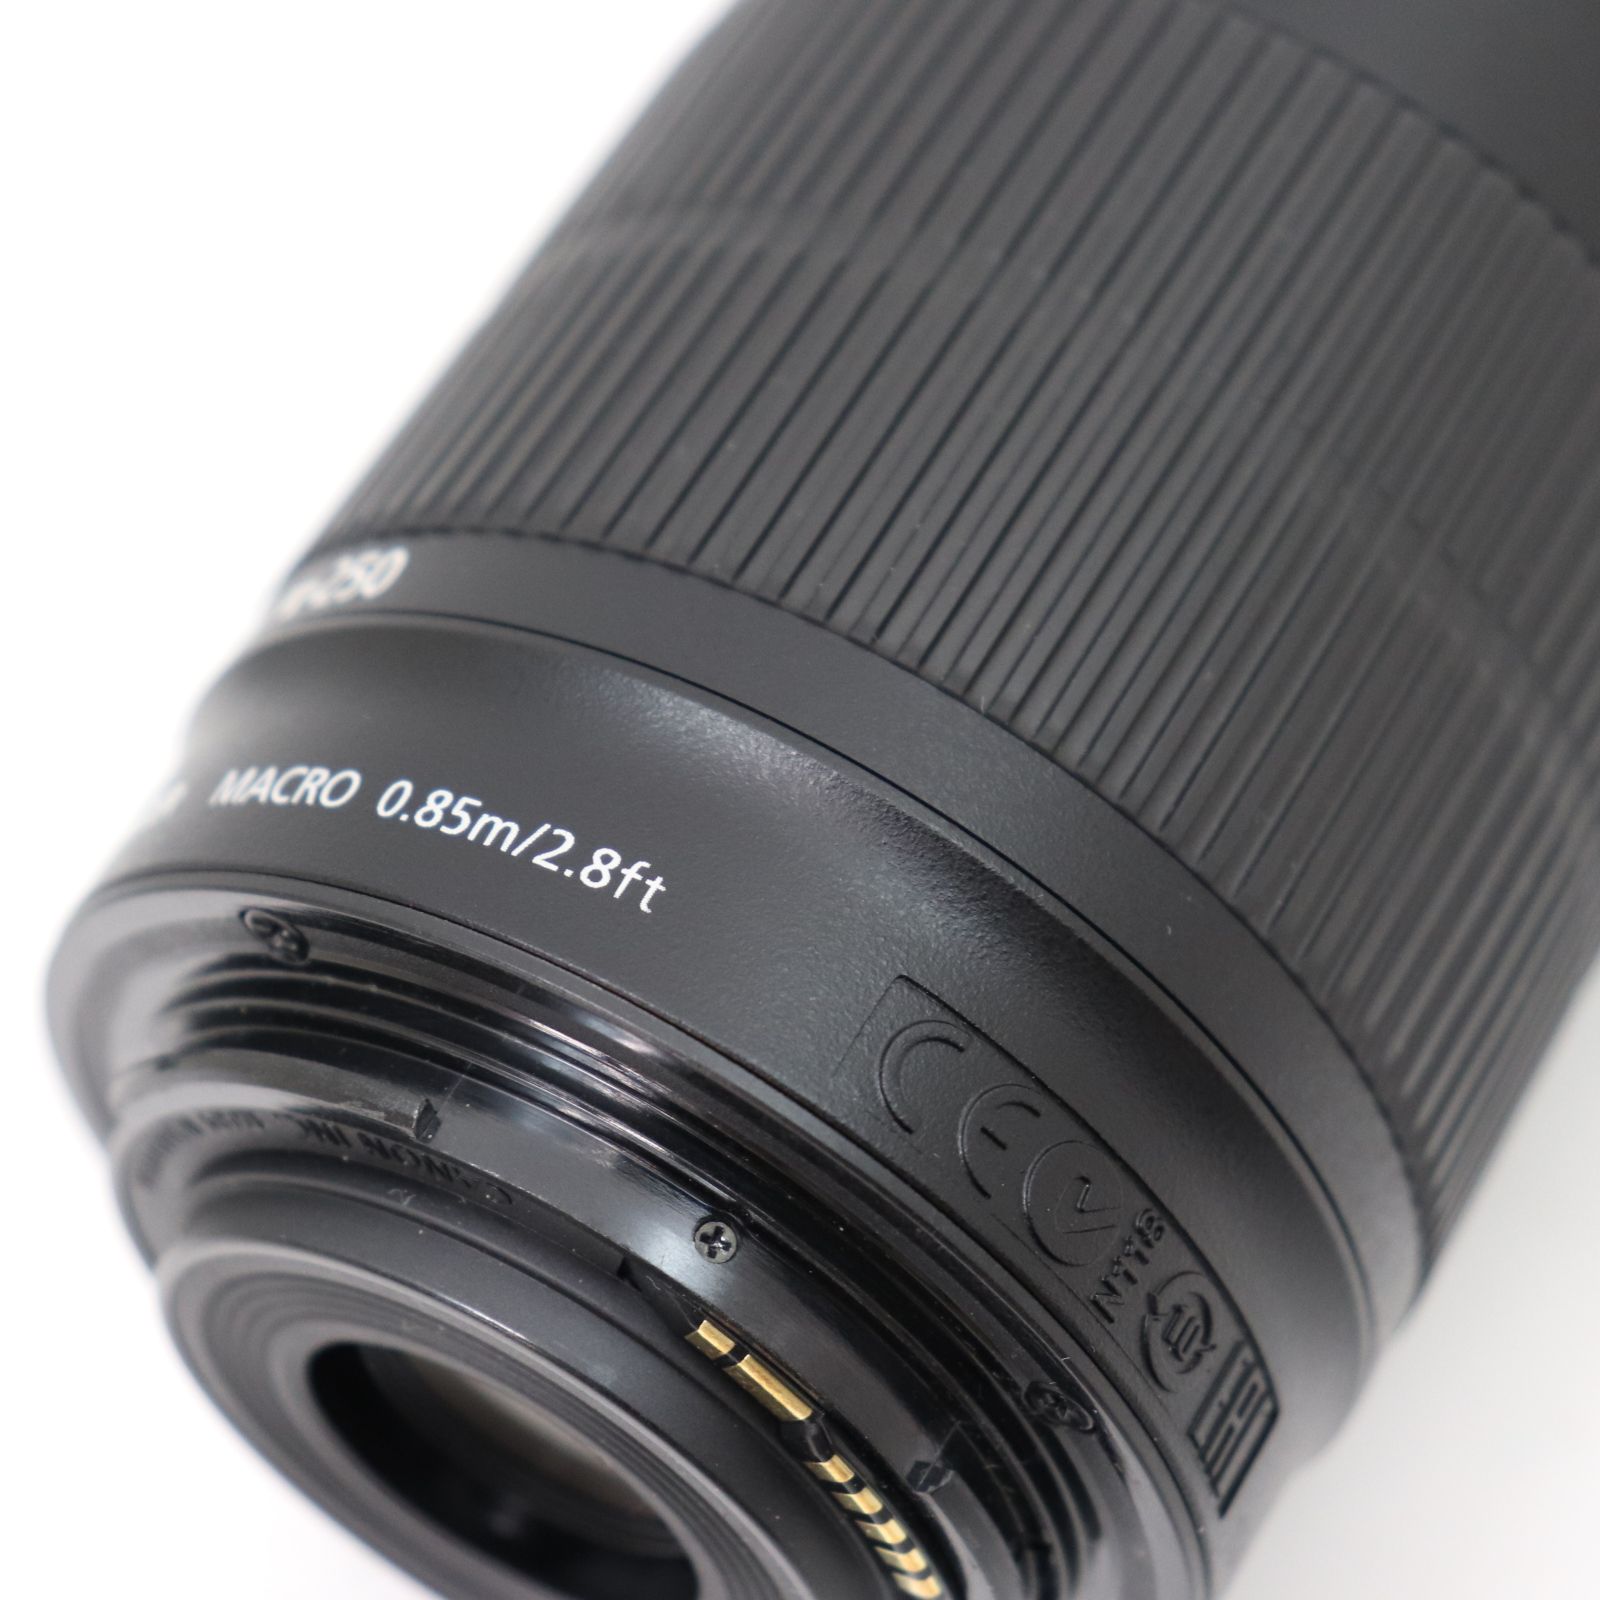 ITTVNYXBBT4I キャノン ZOOM LENS EF-S 55-250mm 1:4-5.6 IS STM MACRO 0.85M/2.8ft  カメラ レンズ